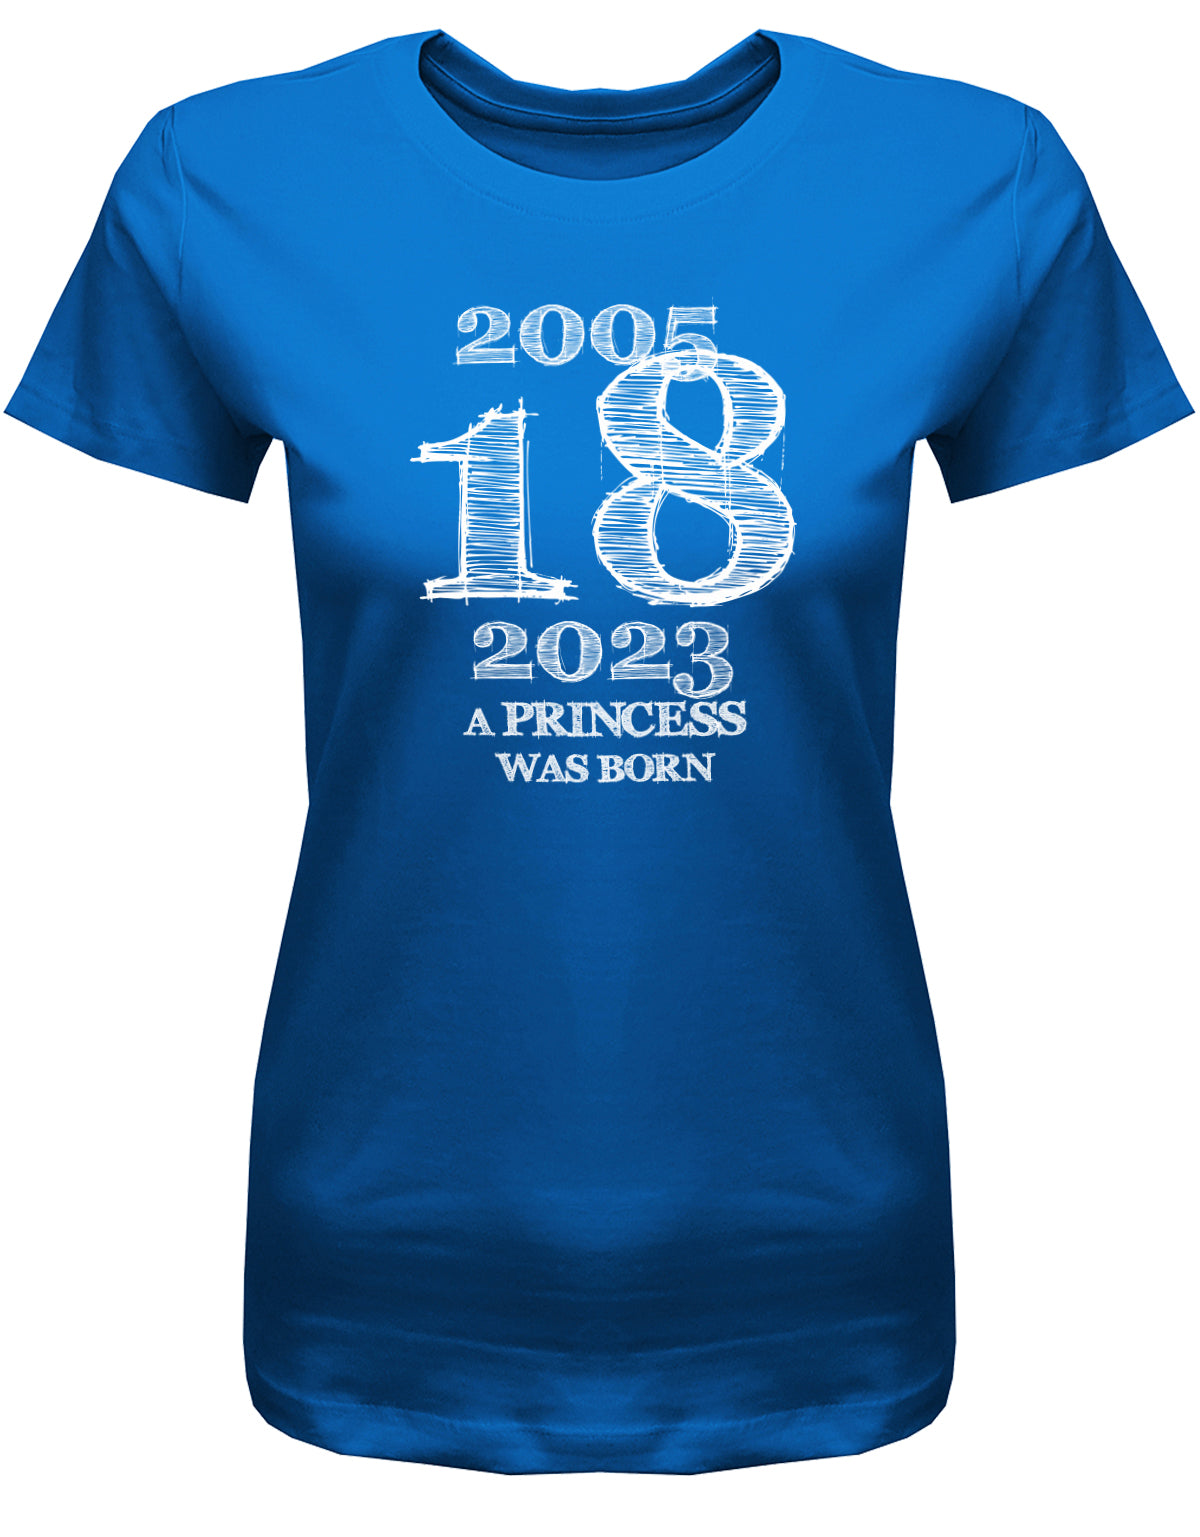 Cooles T-Shirt zum 18 Geburtstag für Mädchen Bedruckt mit: 2005 - 2023 18 a princess was born - Line Style Das T Shirt 10 Geburtstag Mädchen Lustig ist eine super Geschenkidee für alle 18 Jährigen. Man wird nur einmal volljährig. Geschenk zum 18 geburtstag Frau ✓ 2005 geburtstag Frau ✓ 18 Geburtstag tshirt ✓ shirt geburtstag 18 Royalblau